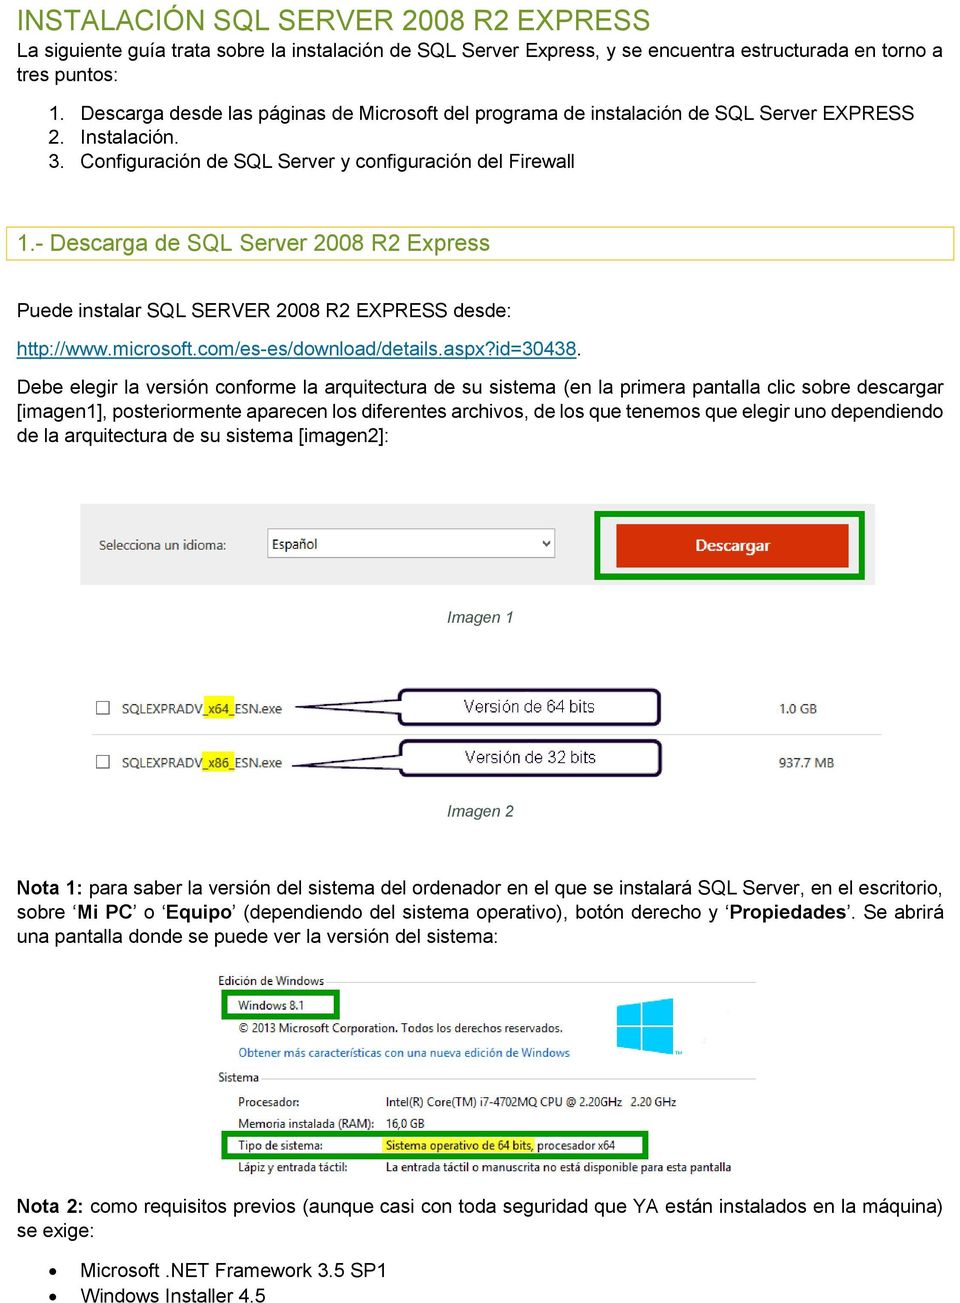 - Descarga de SQL Server 2008 R2 Express Puede instalar SQL SERVER 2008 R2 EXPRESS desde: http://www.microsoft.com/es-es/download/details.aspx?id=30438.